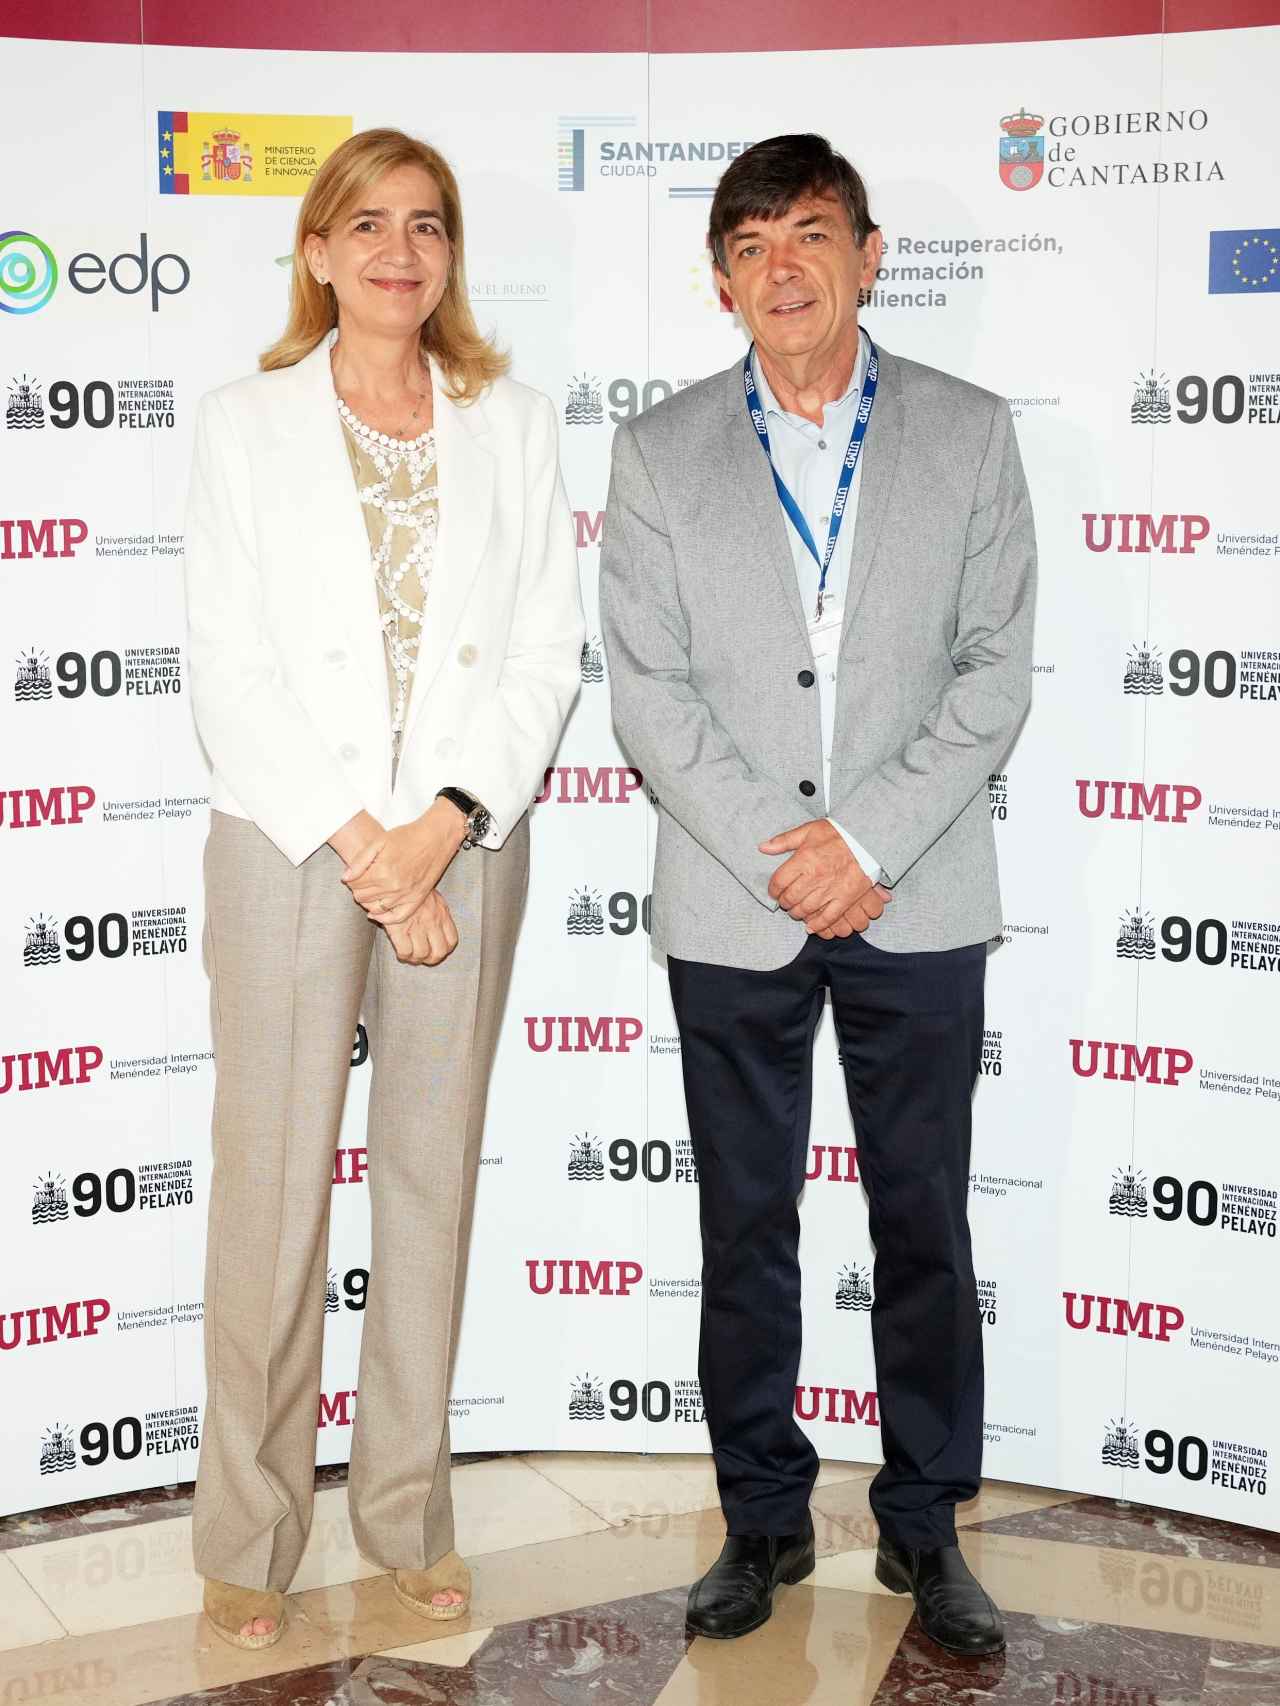 La infanta, junto al rector de la UIMP, Carlos Andradas.